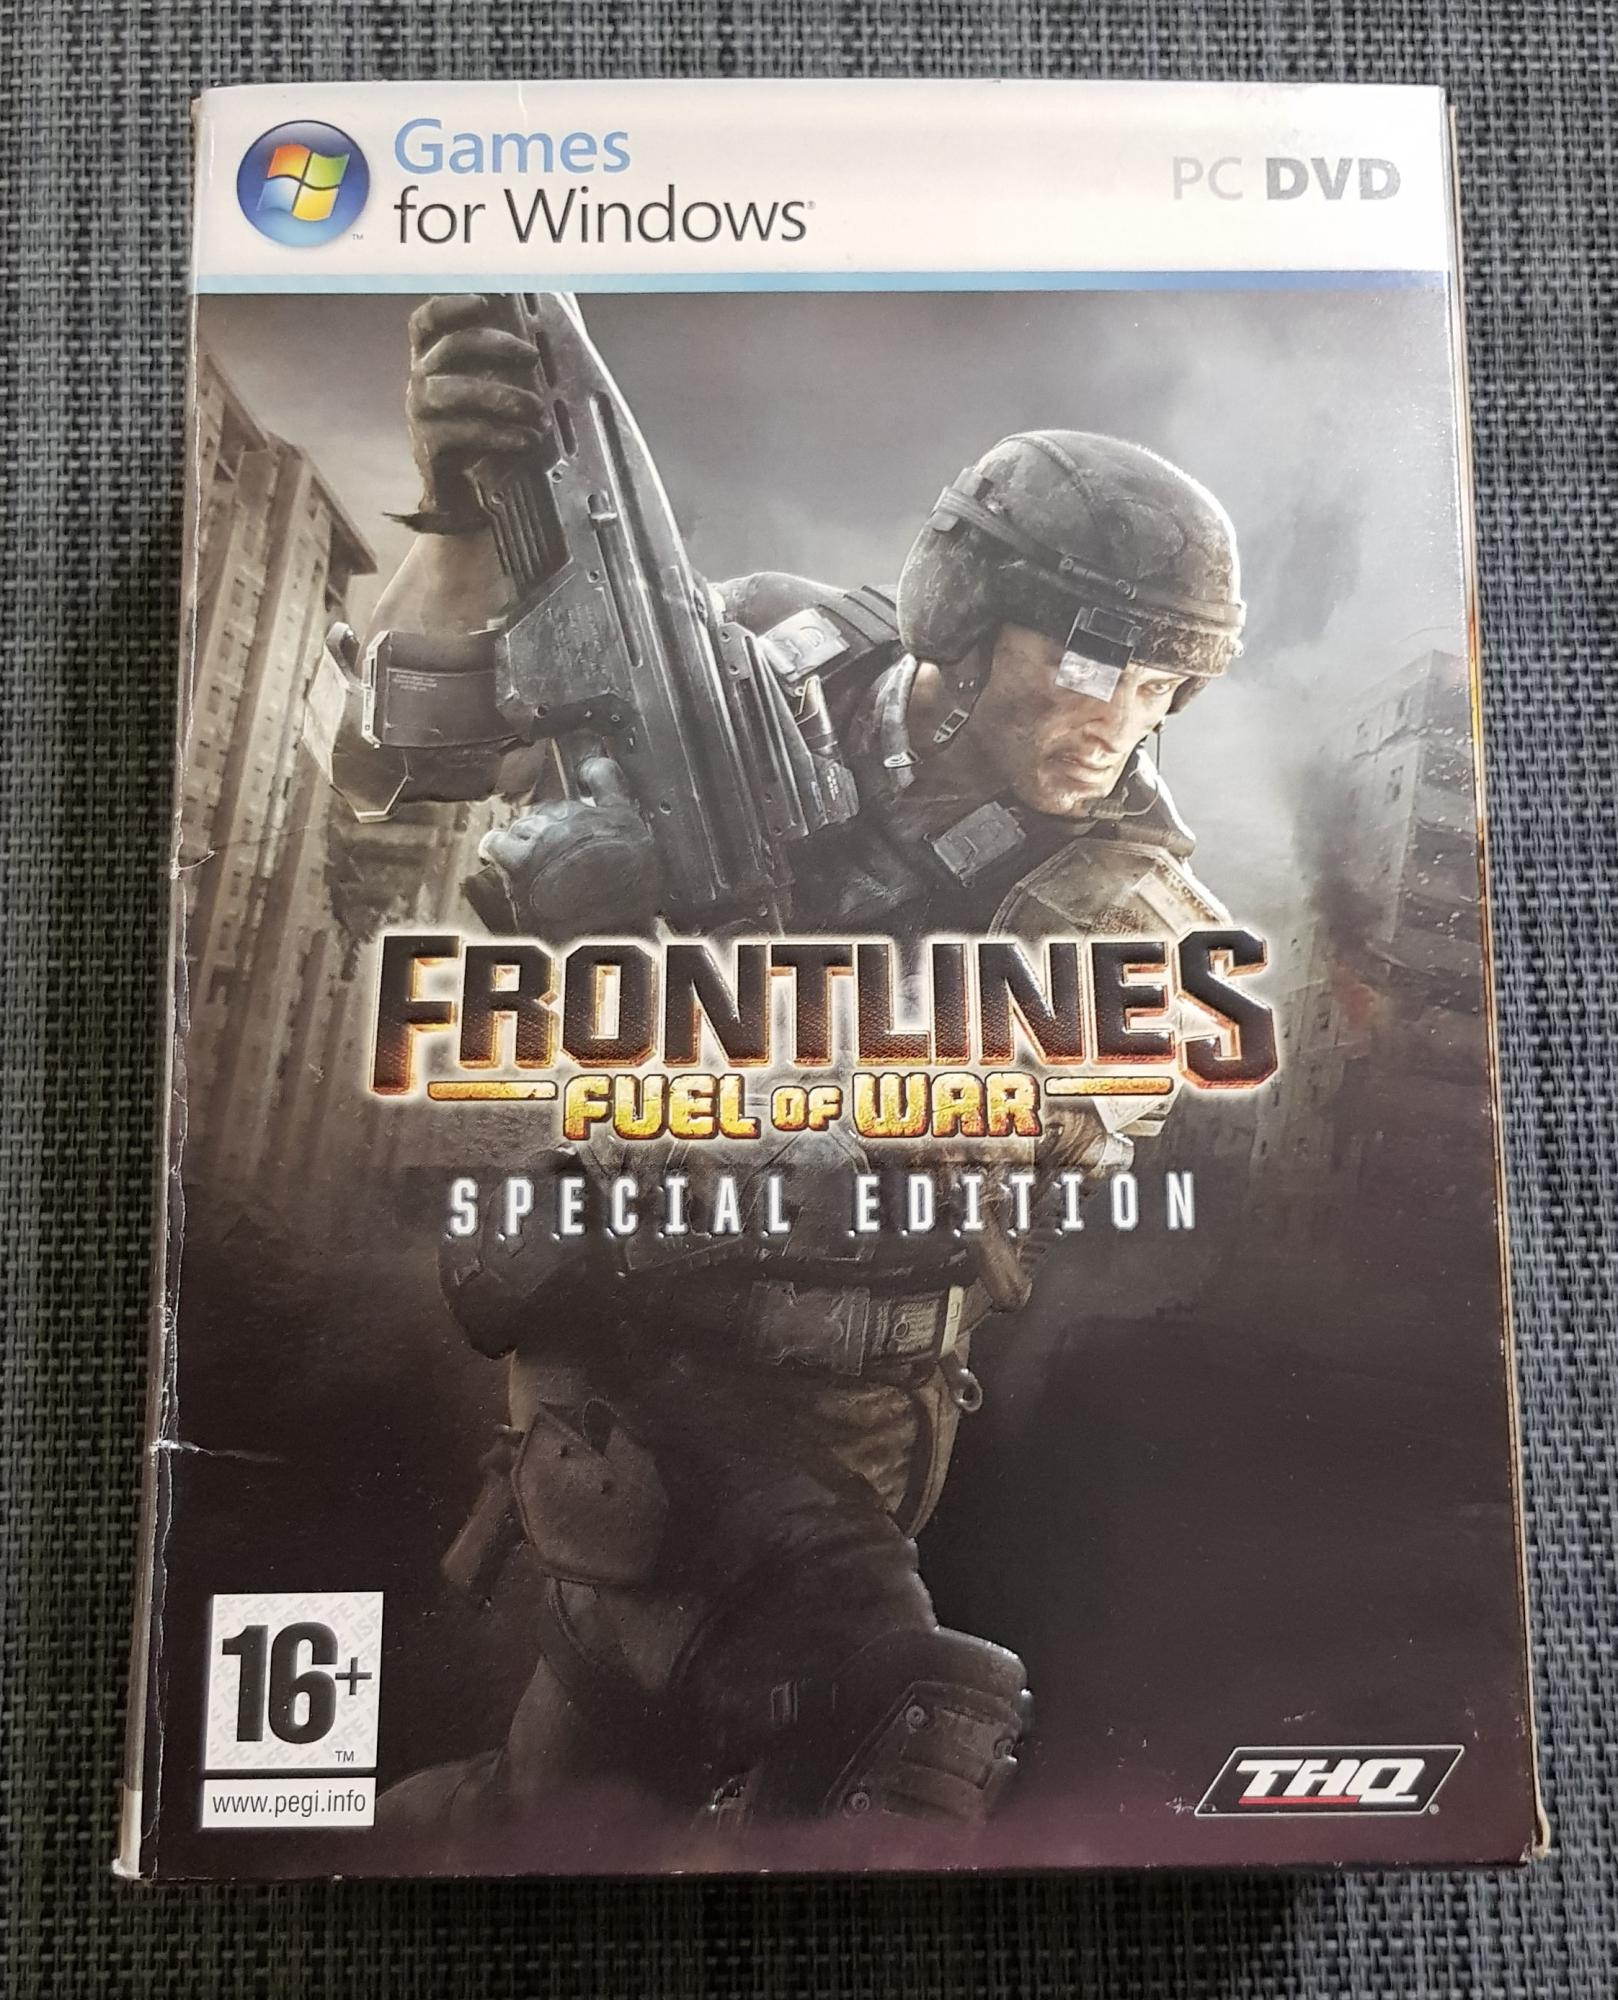 Игра Frontlines: Fuel of War для PC в Москве 89256150066 купить 1